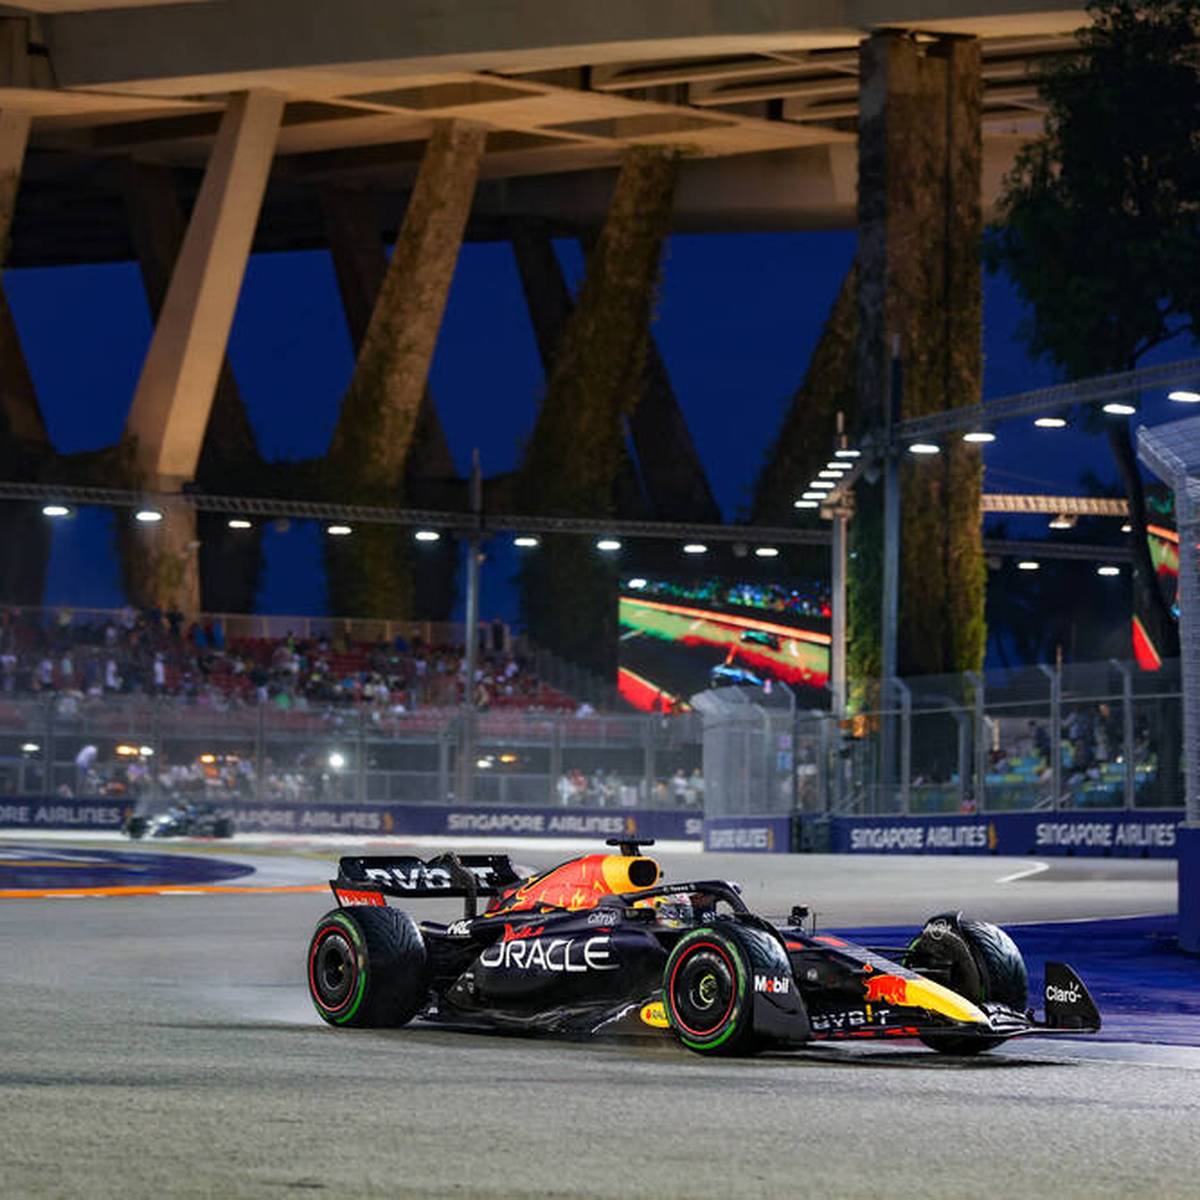 Ferrari-Pilot Charles Leclerc startet von der Pole Position in den Großen Preis von Singapur. Weltmeister Max Verstappen muss sein Qualifying dagegen unglücklich abbrechen.